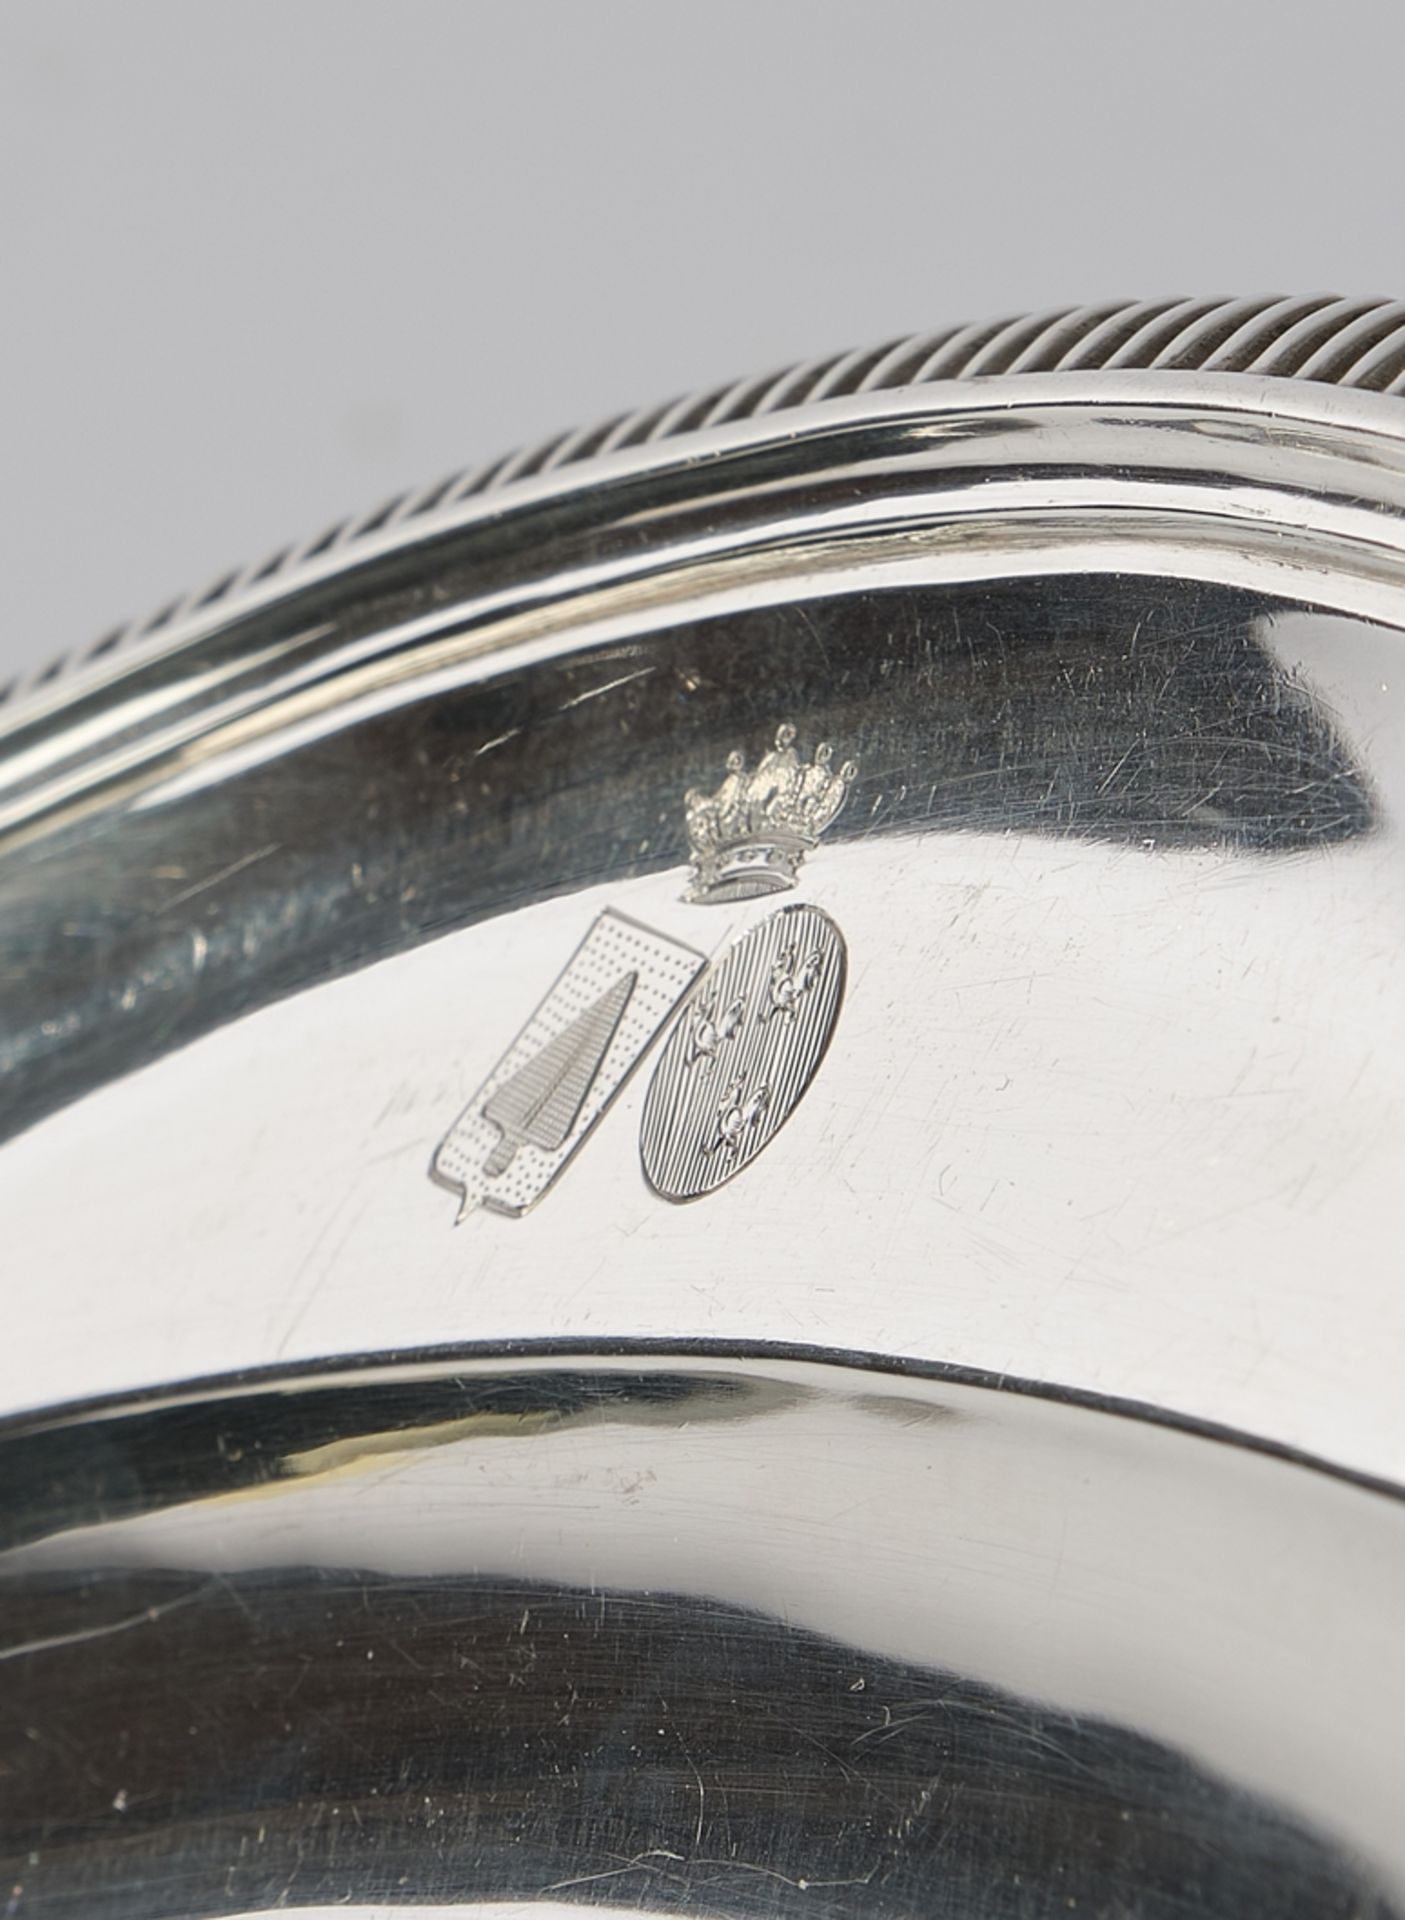 Vorlegeplatte, Silber 800, Belgien, Delheid, ovalförmig, passig-geschweift, umlaufende Zungenbordür - Bild 2 aus 2